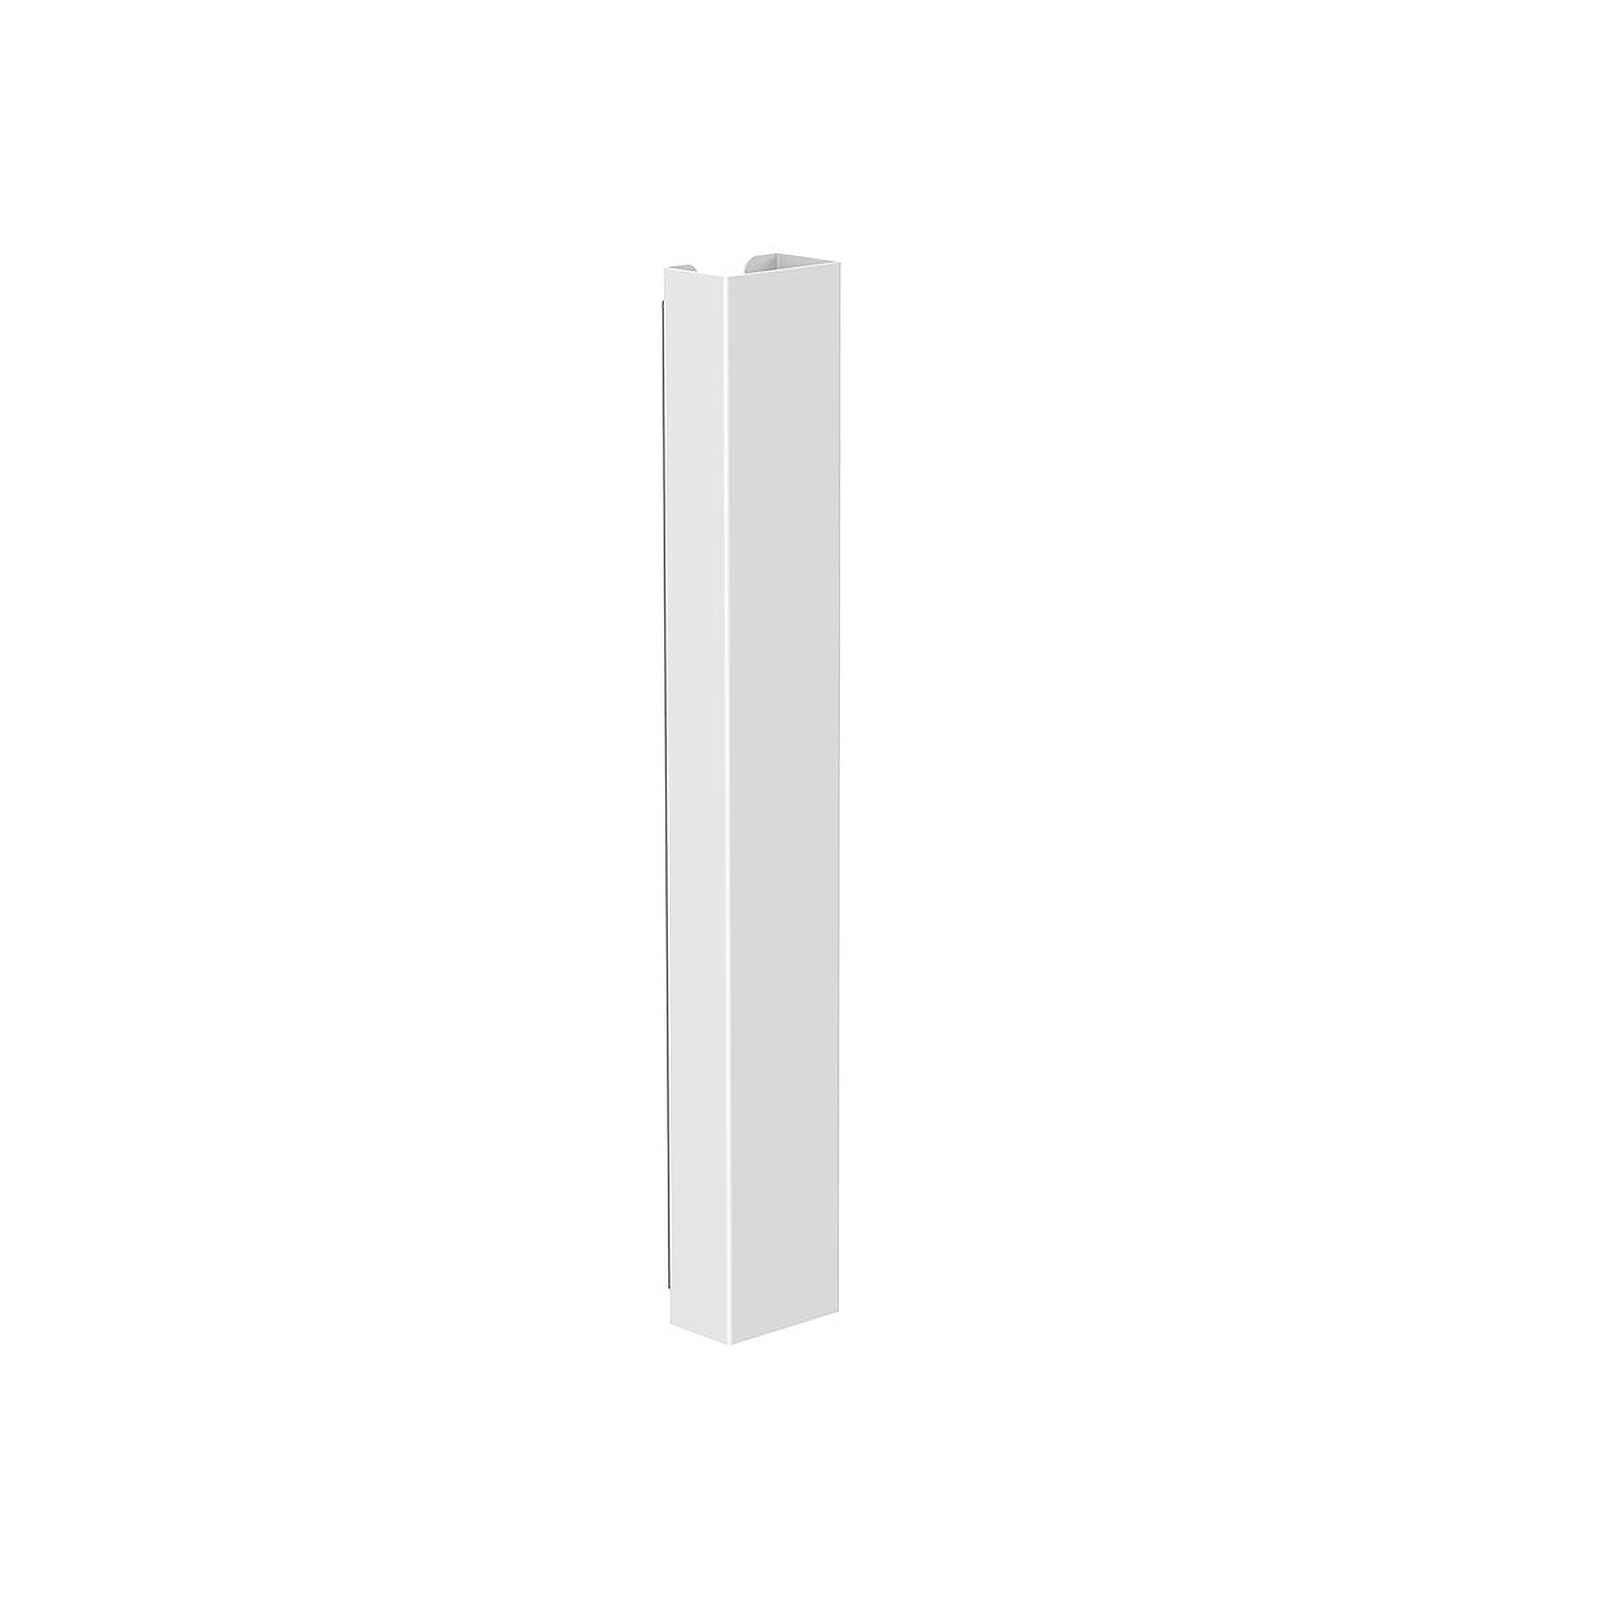 UP & DESK passe-câble horizontale (blanc) - Accessoires et ergonomie - LDLC